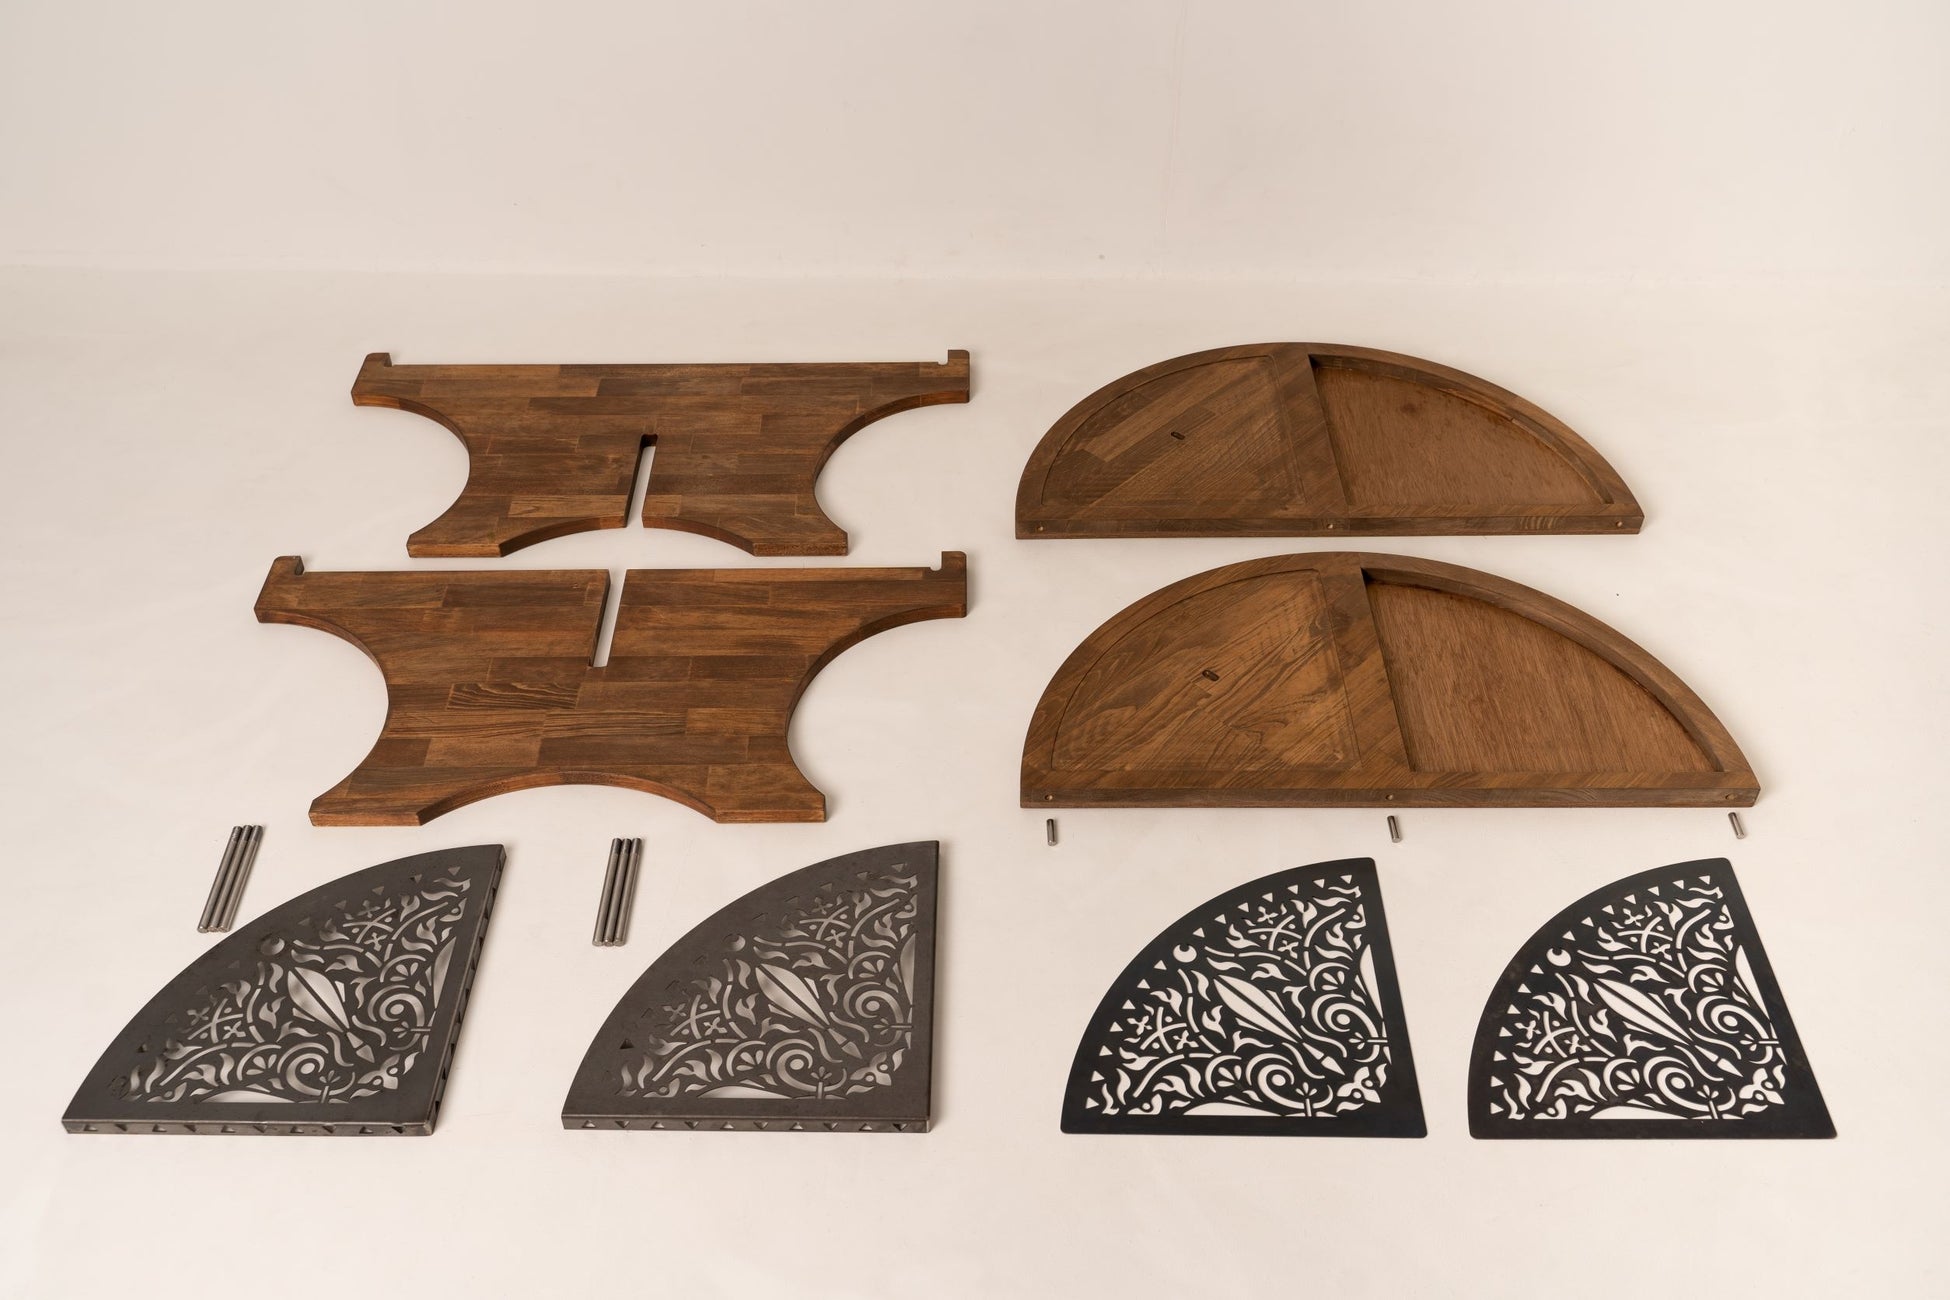 関西発アウトドア&ハウスギアブランド「xBx」が第一弾の新作を発表  10の特徴を持つ今までに無い全く新しい耐熱型ウッドテーブル『Xross Wood Table～クロス・ウッド・テーブル～』のサブ画像8